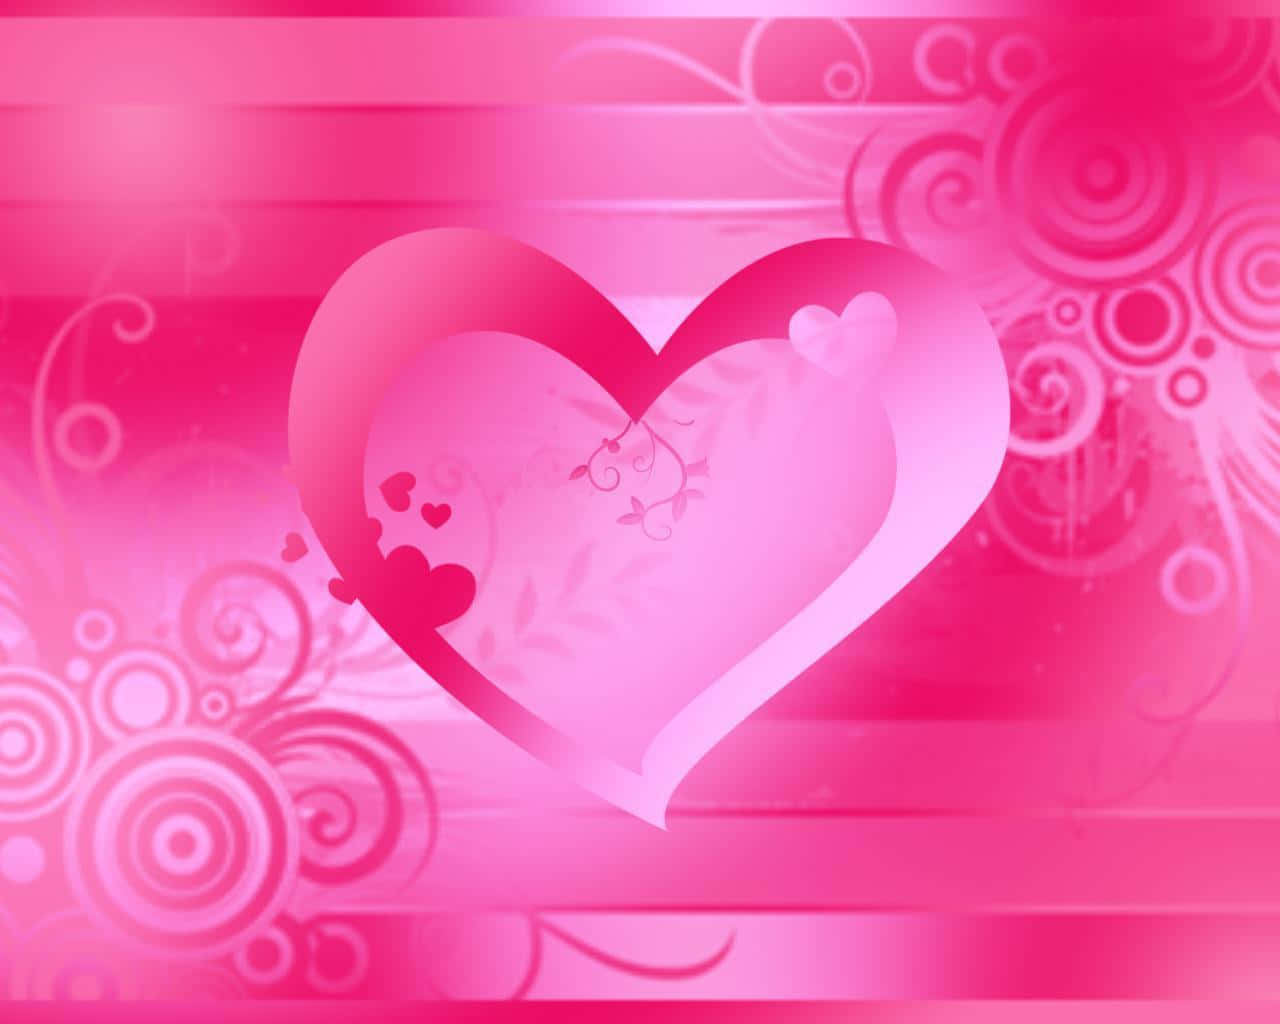 Ladkærligheden Skinne Igennem Et Lyst Pink Hjerte.